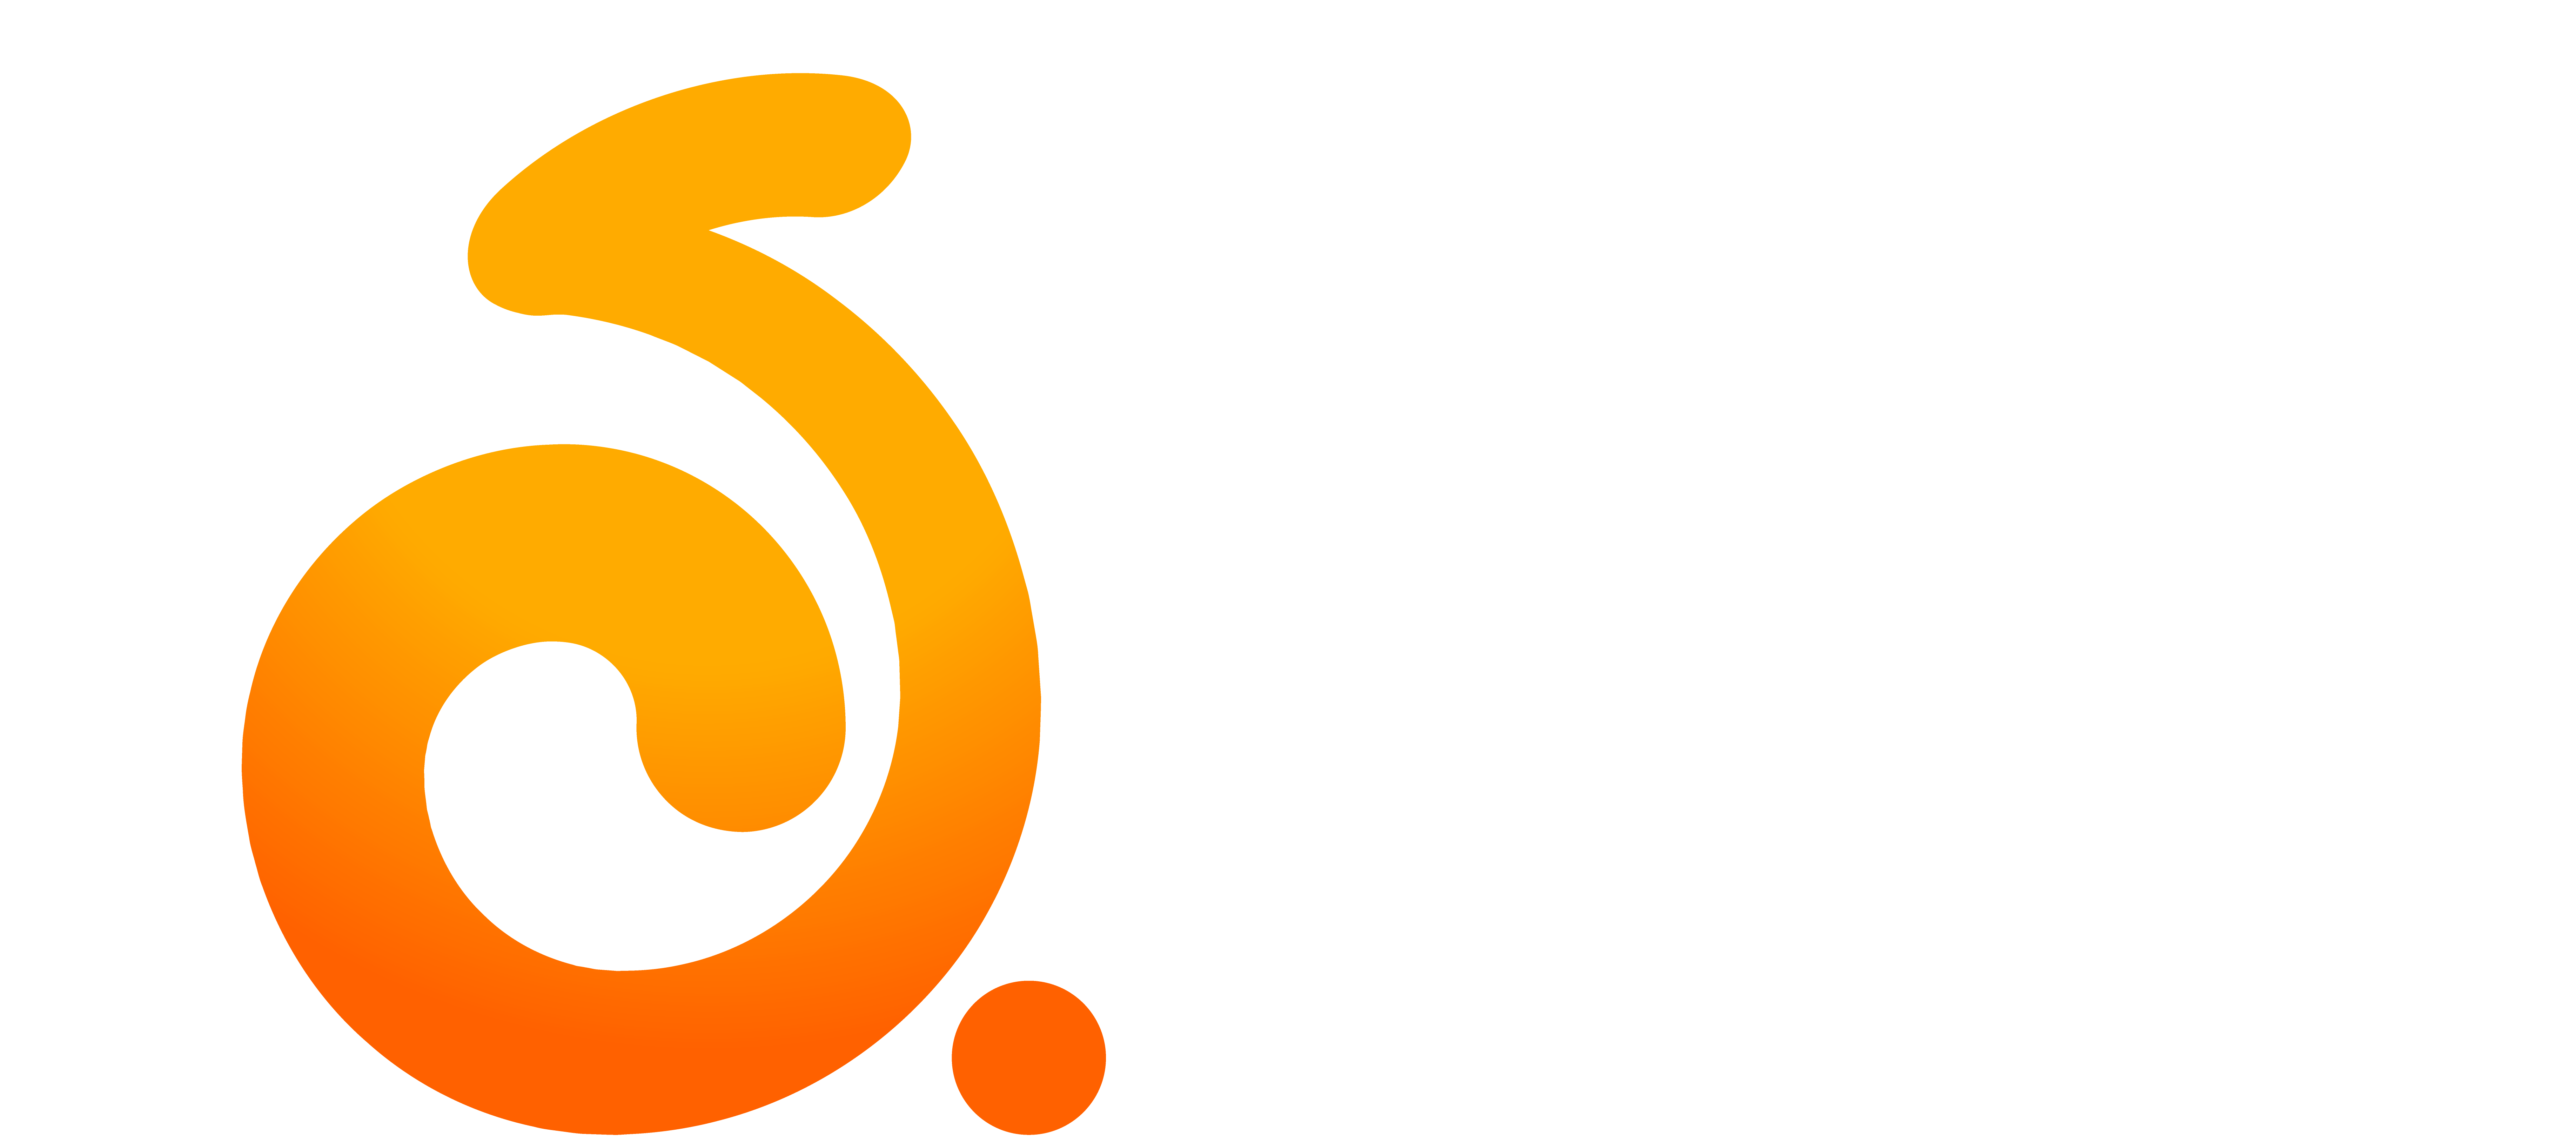 D&R Studios